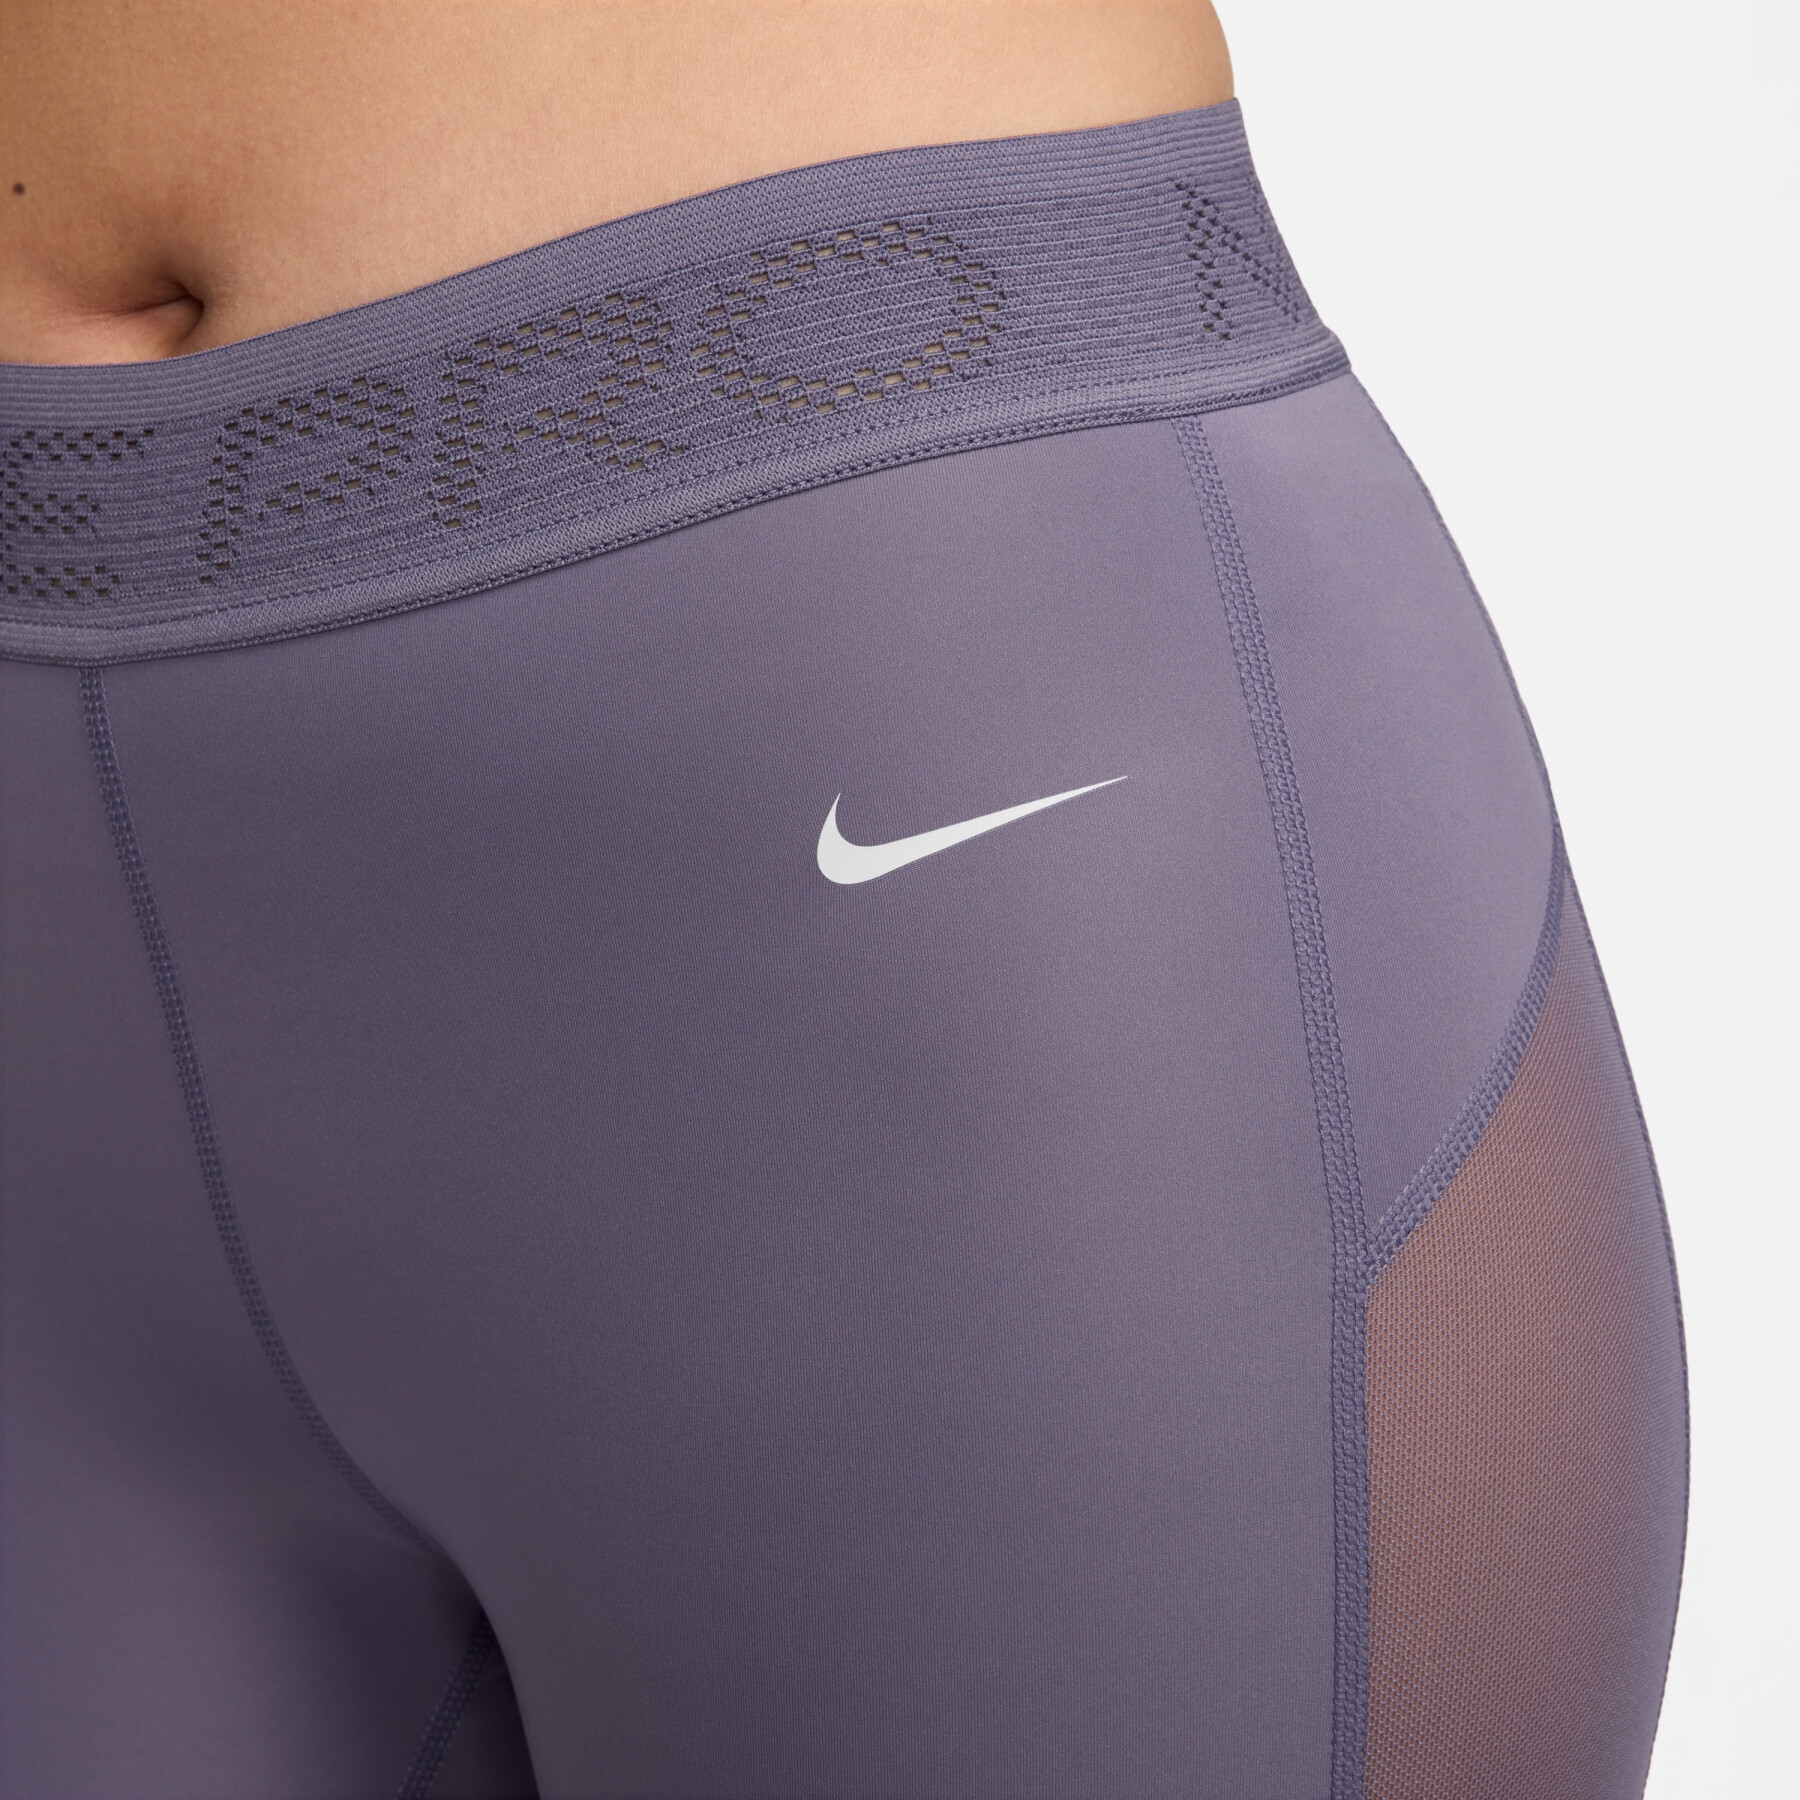 Legging 7/8 para mujer Nike Pro